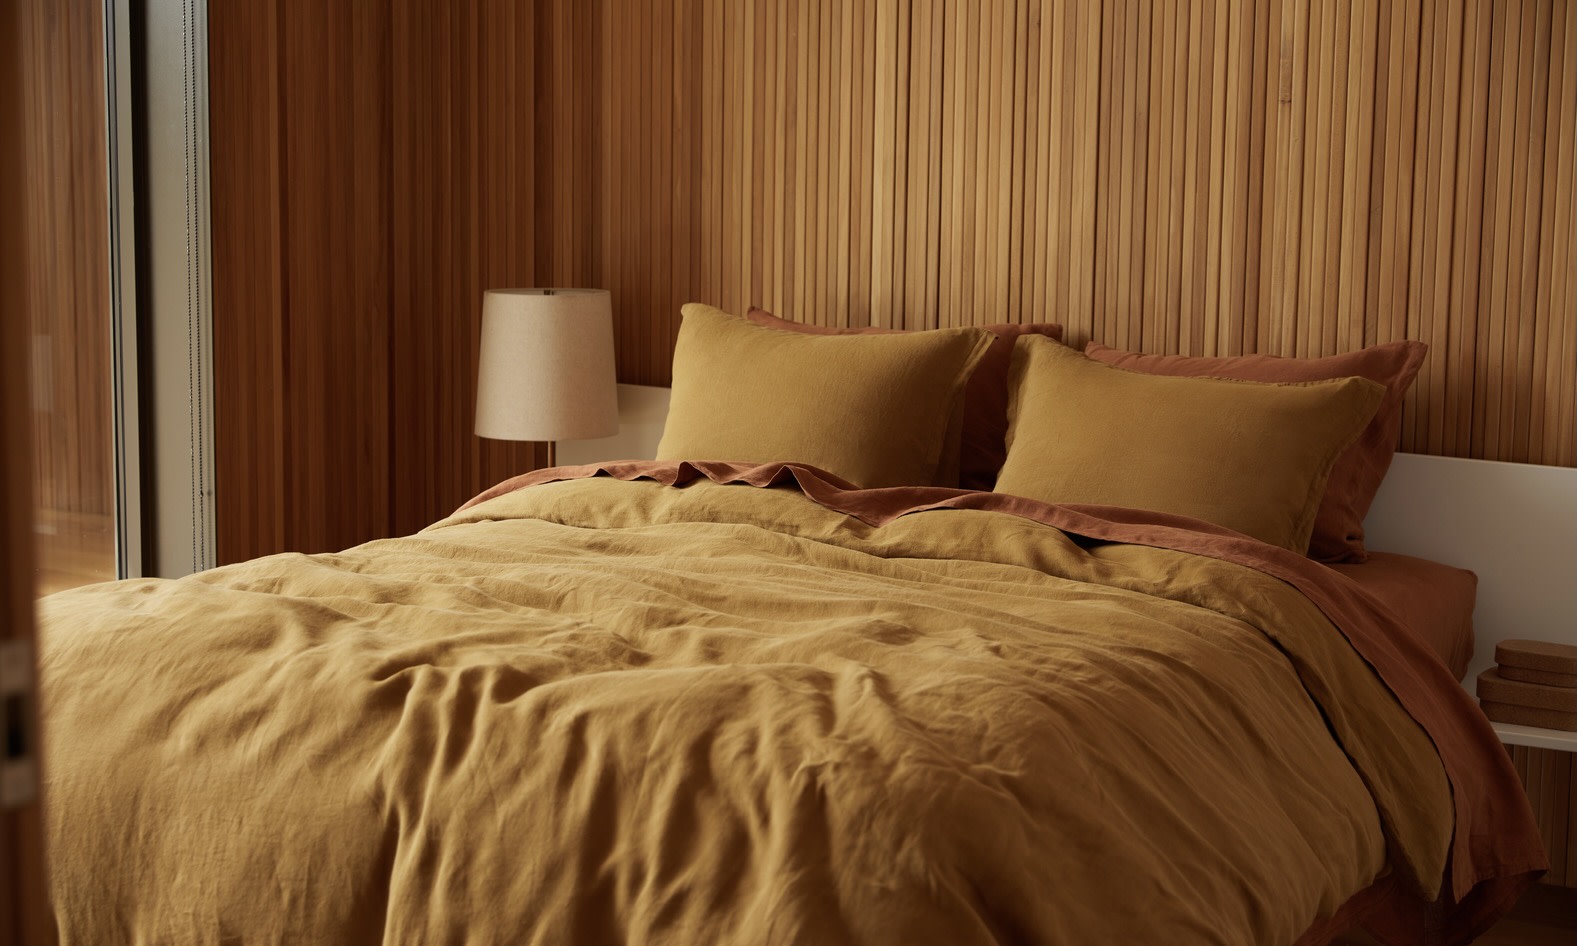 Comfort Collection Gentle Night Sleep Bed Sheet & Pillowcase Set, Queen  Size, Deep Blue